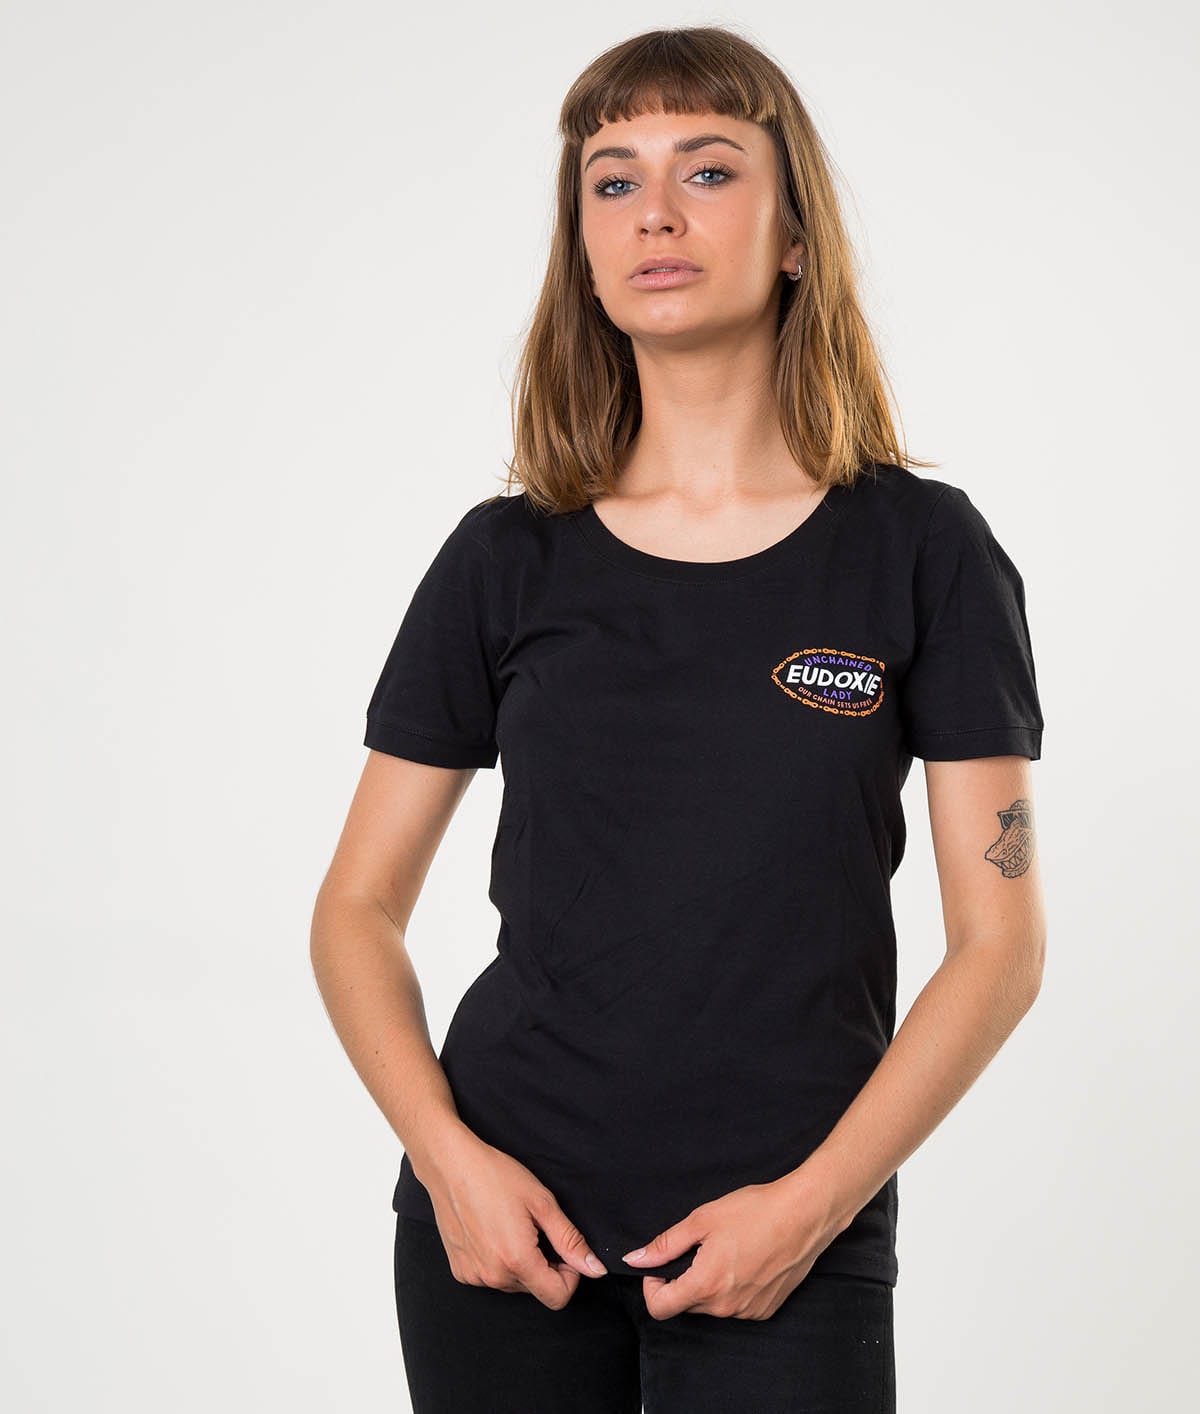 Eudoxie Black Masha T-Shirt - Large - Bild 2